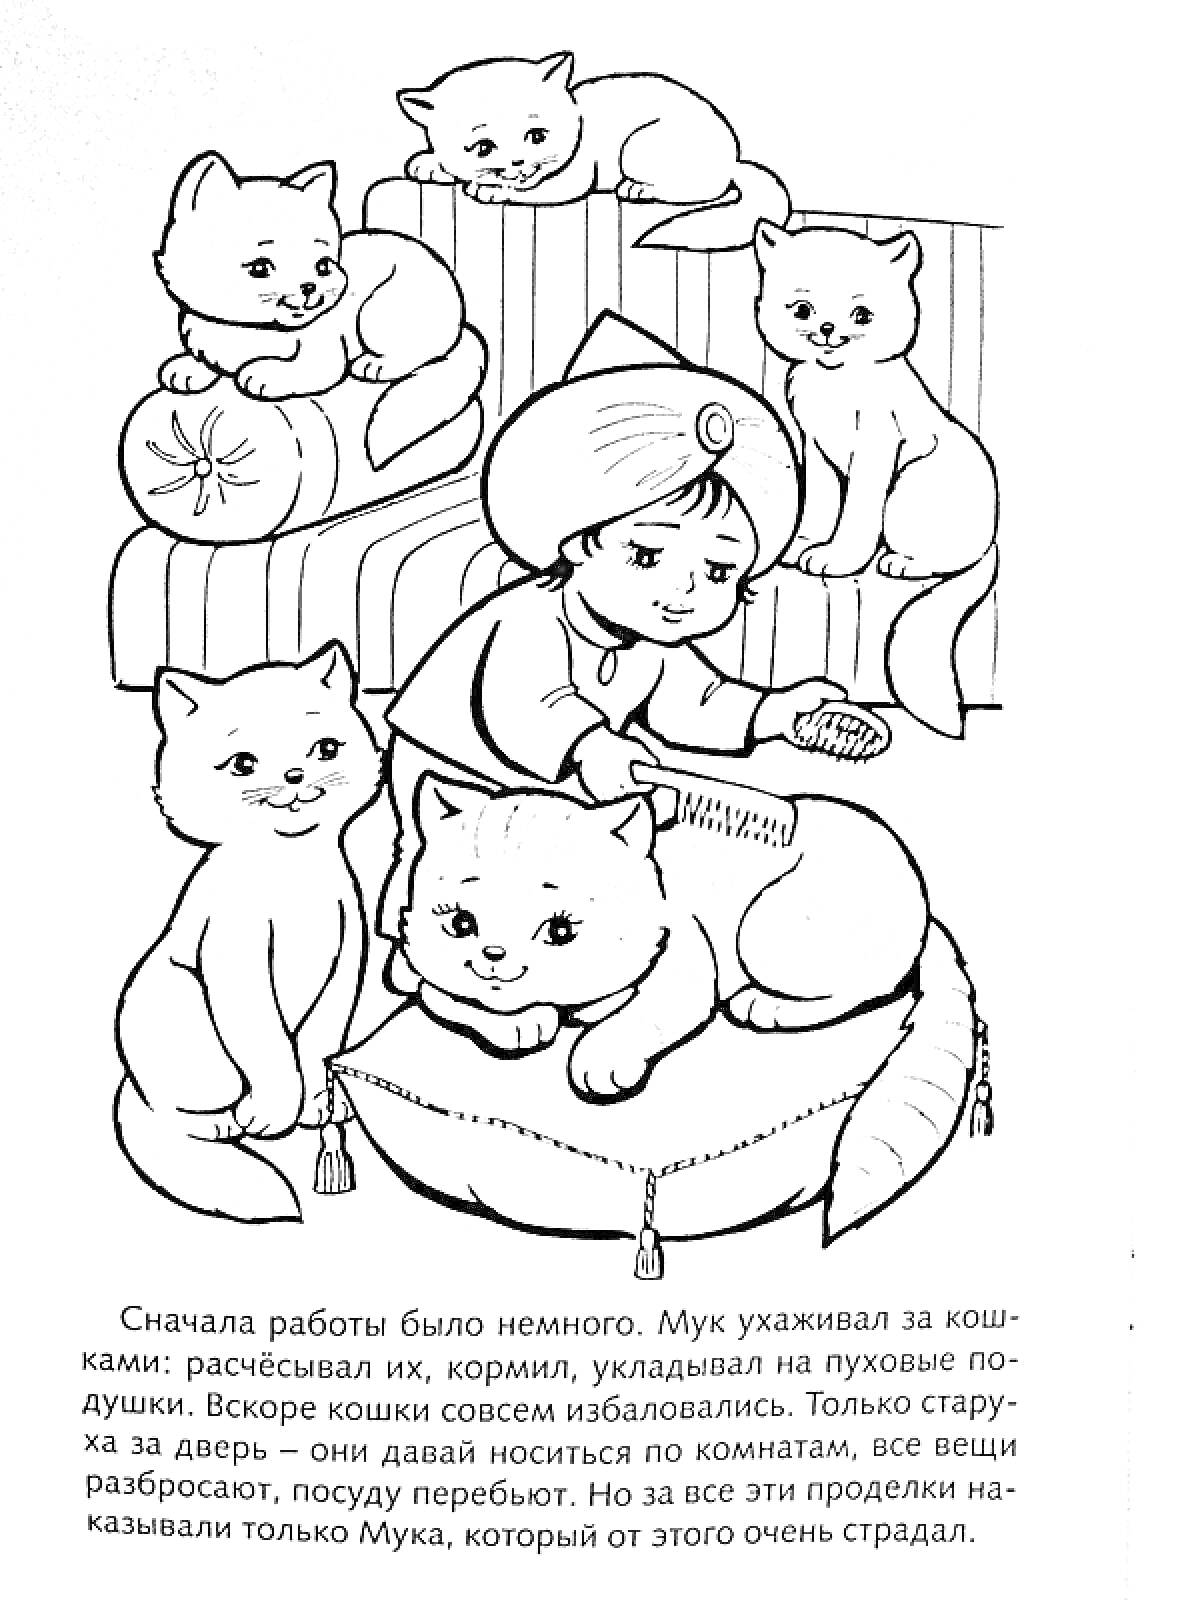 Раскраска Мальчик с кошками на подушках, сидящий на полу, расчесывает кошку, текст под картинкой.